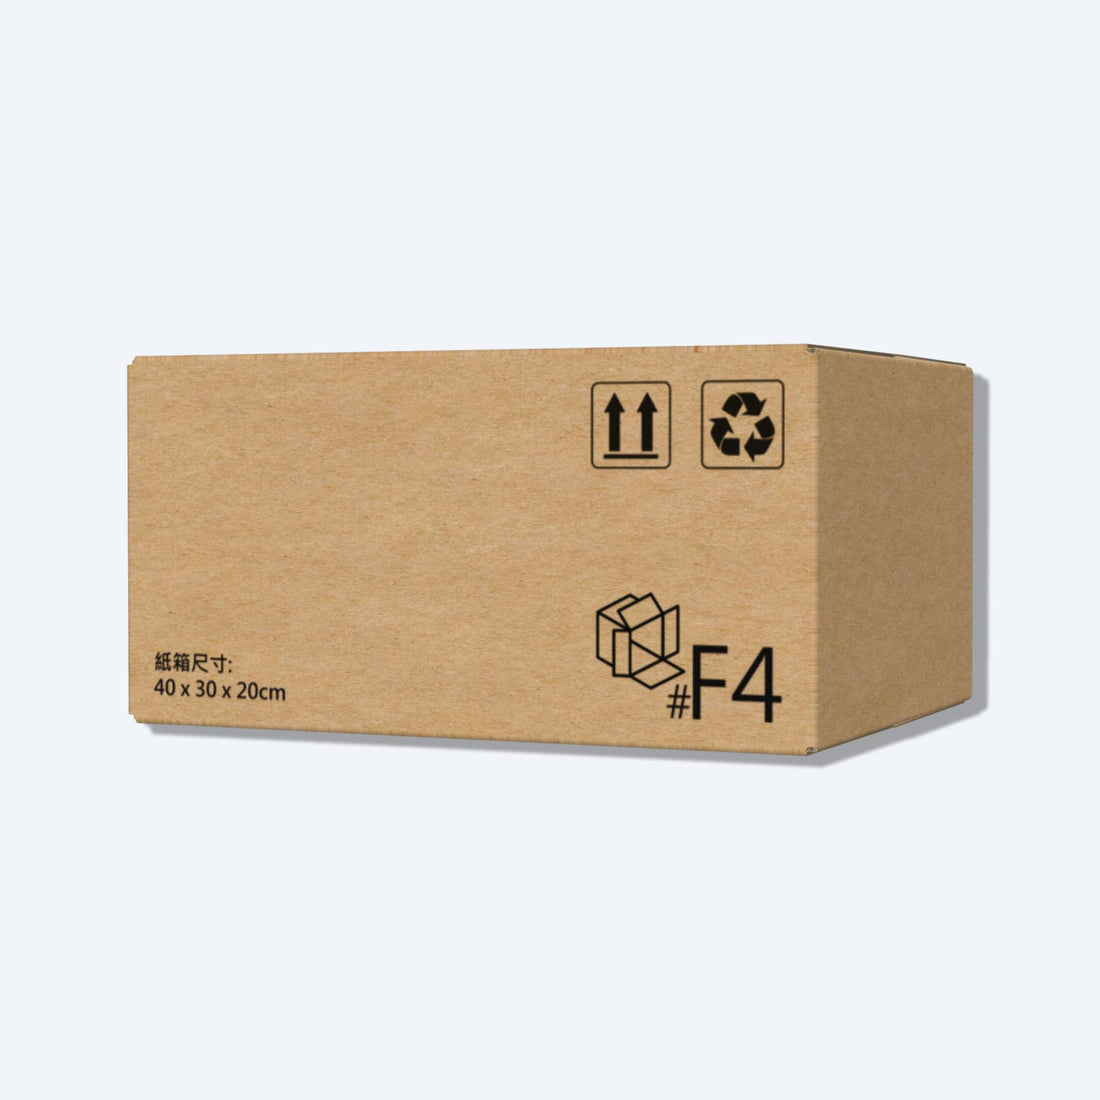 堅固的啡色順豐速運F4尺寸紙箱正面圖，這款快遞紙箱專為順豐速運設計。